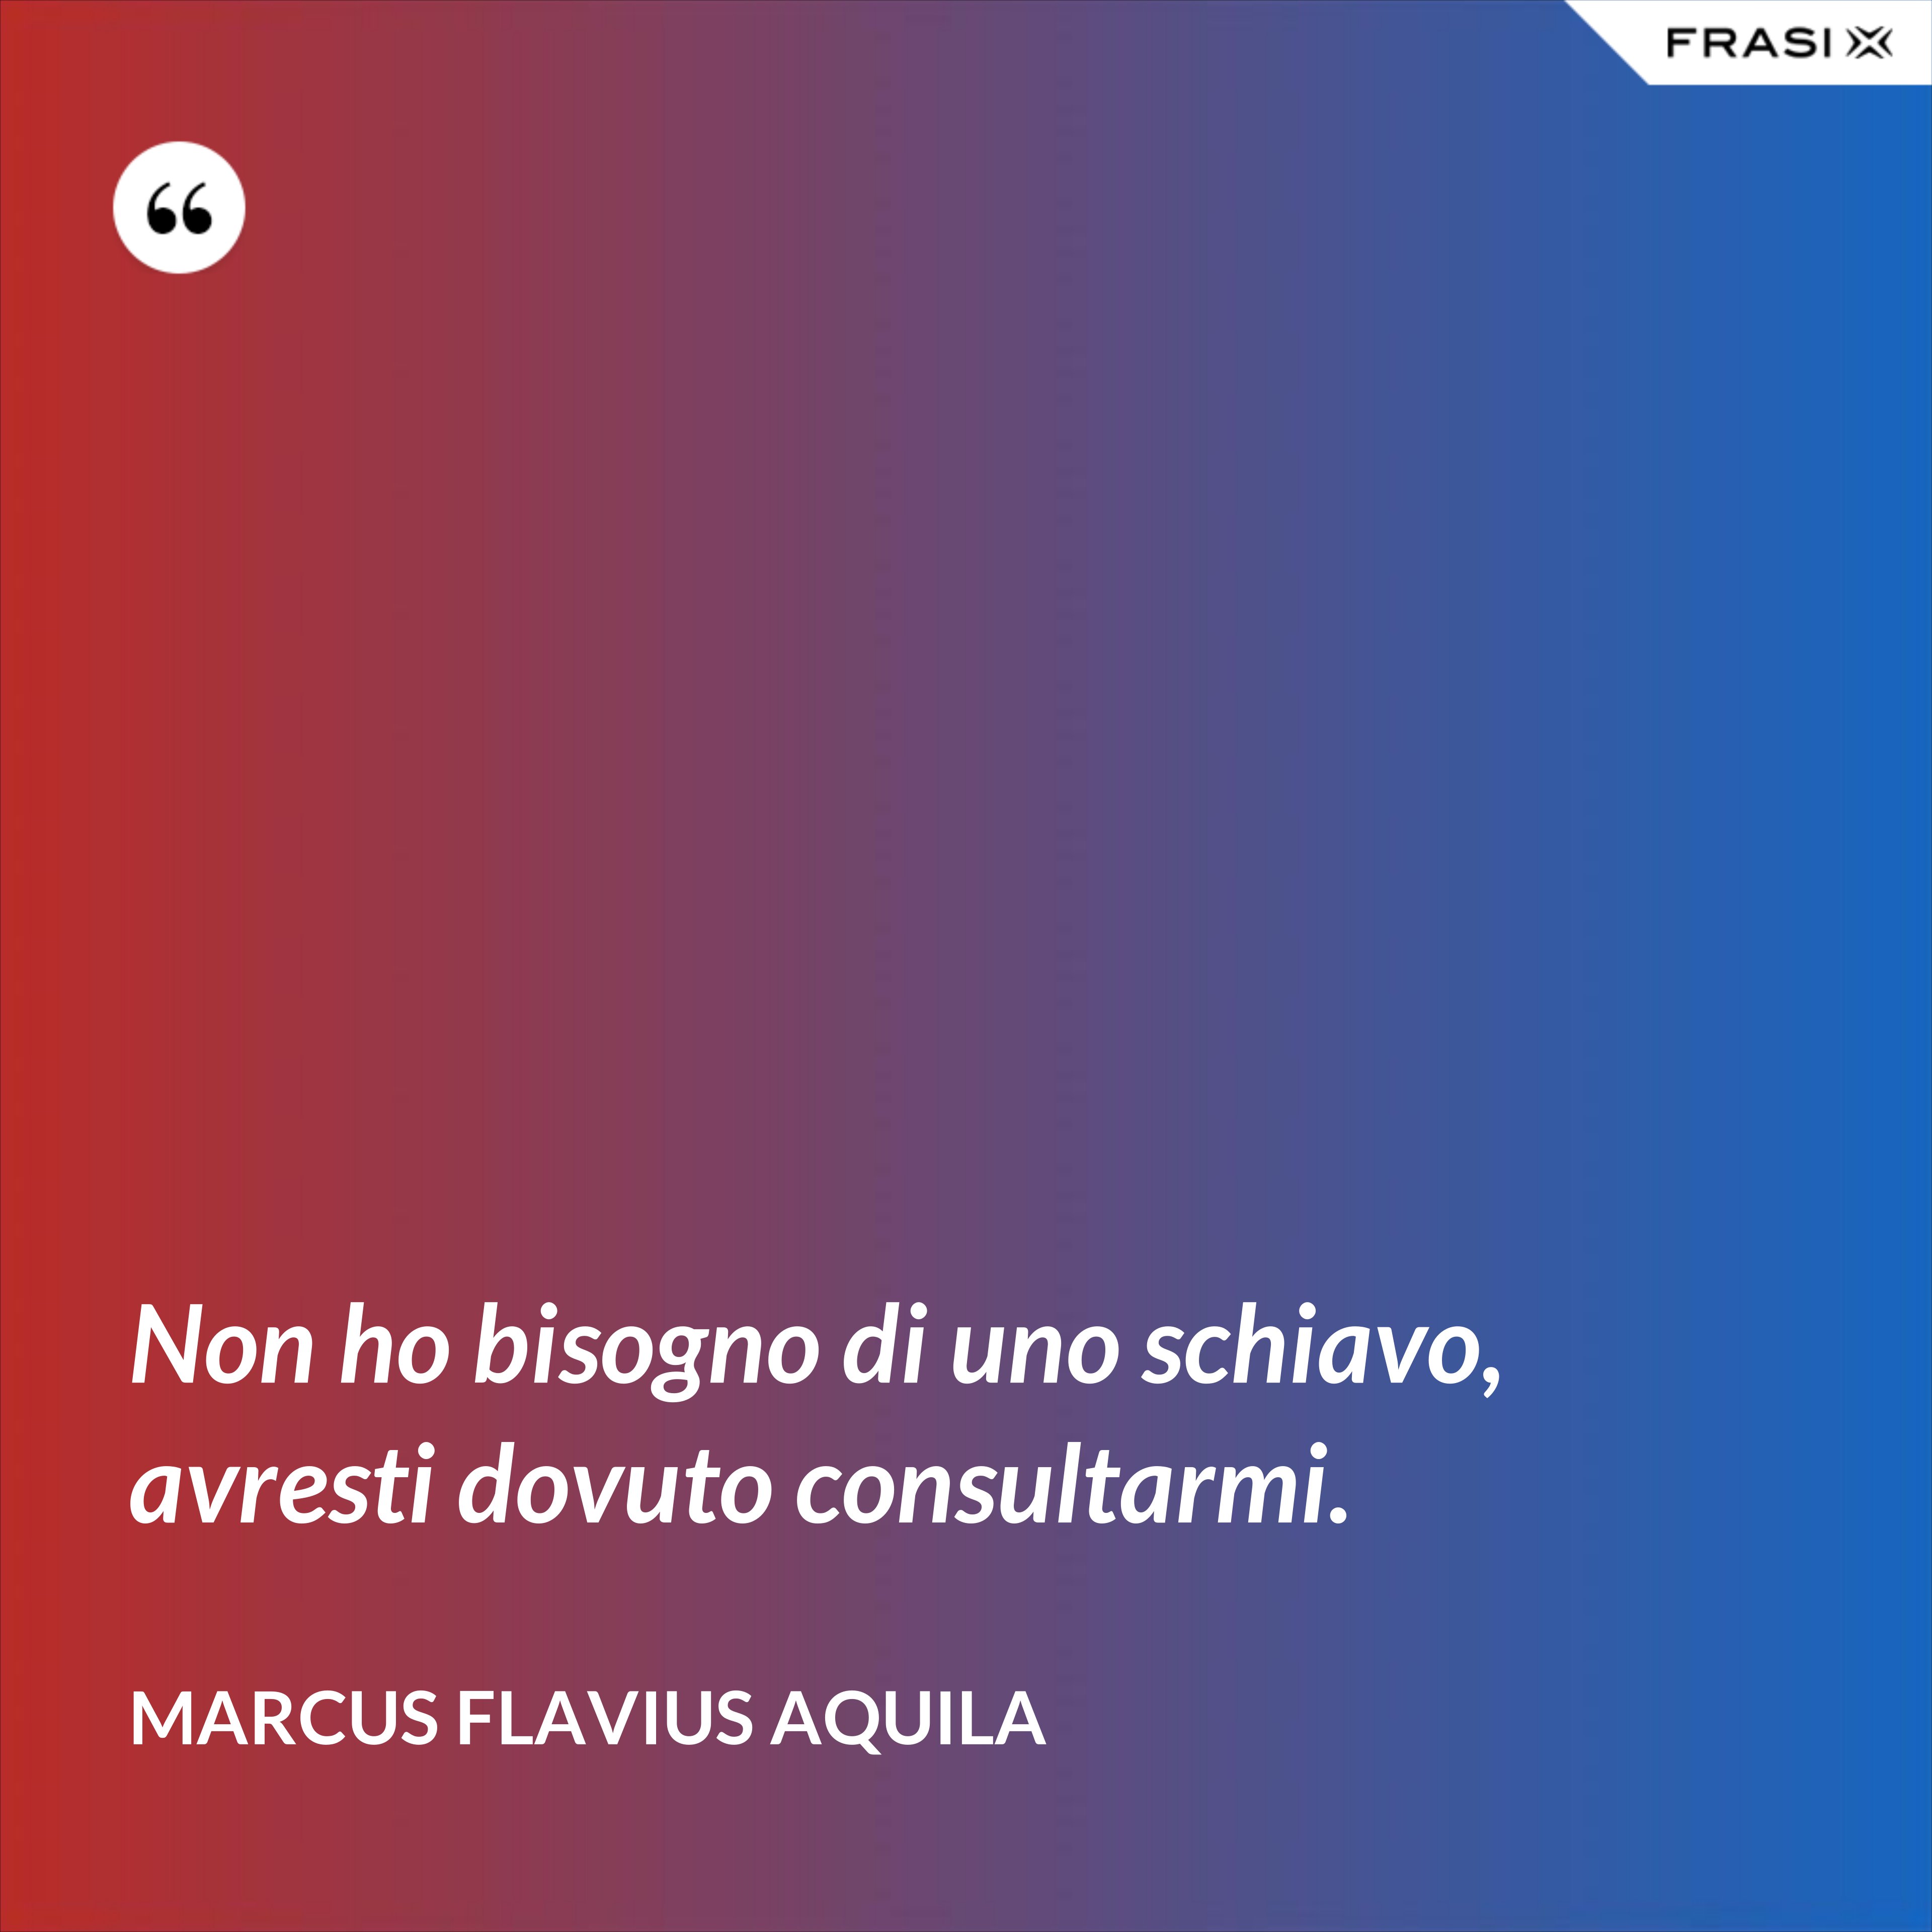 Non ho bisogno di uno schiavo, avresti dovuto consultarmi. - Marcus Flavius Aquila